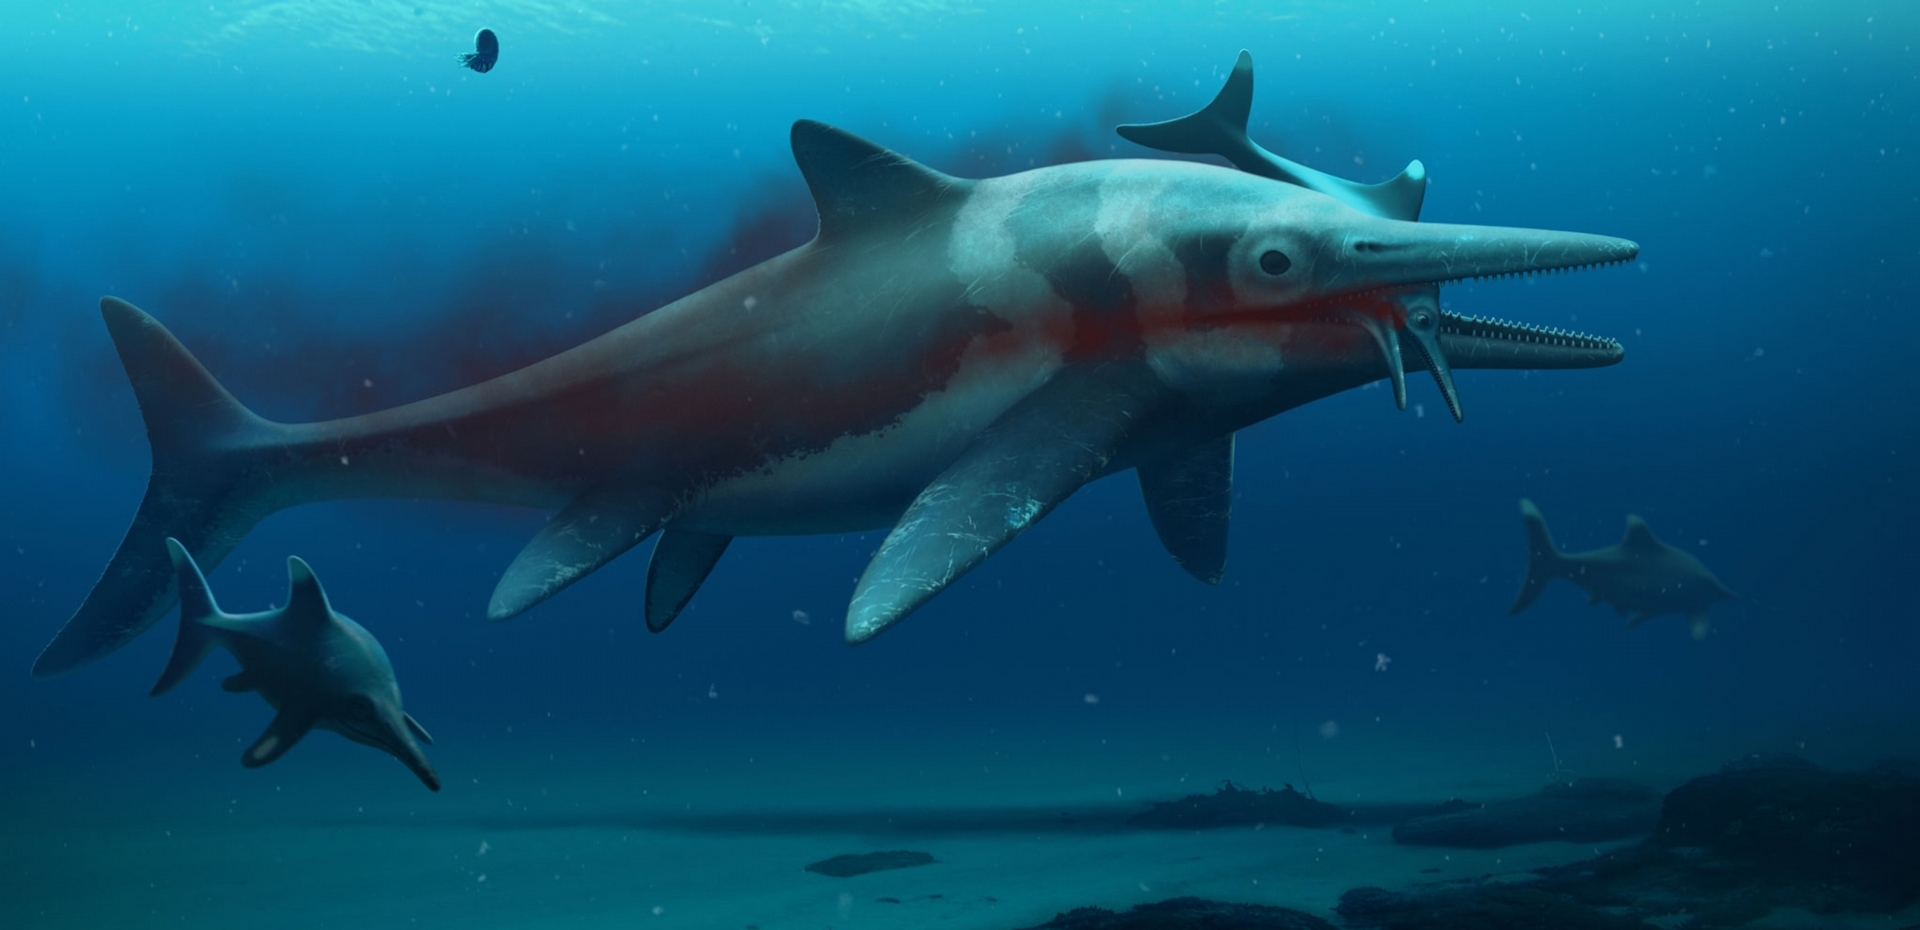 魚龍是一種海洋爬行類，也是遠古海洋中體型最大的掠食者之一。新發現的化石將有助科學家了解牠們的演化史。ILLUSTRATION BY BOB NICHOLLS